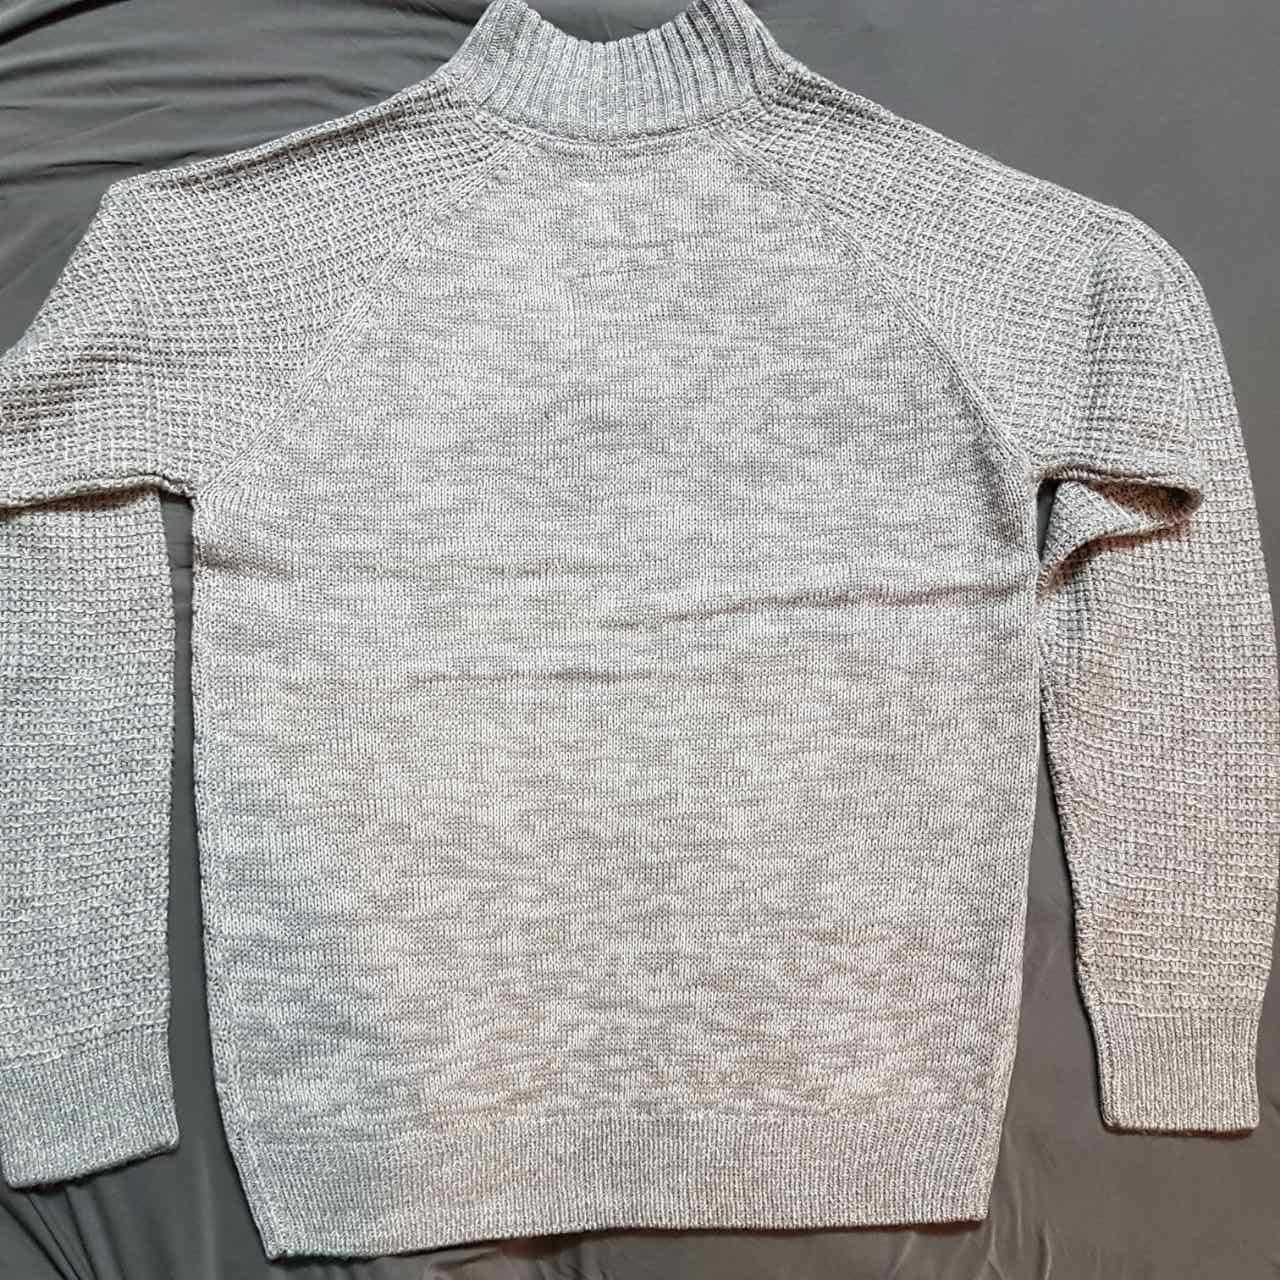 Фирменный мужской джемпер свитер SoulCal Quarter Button Knit из Англии